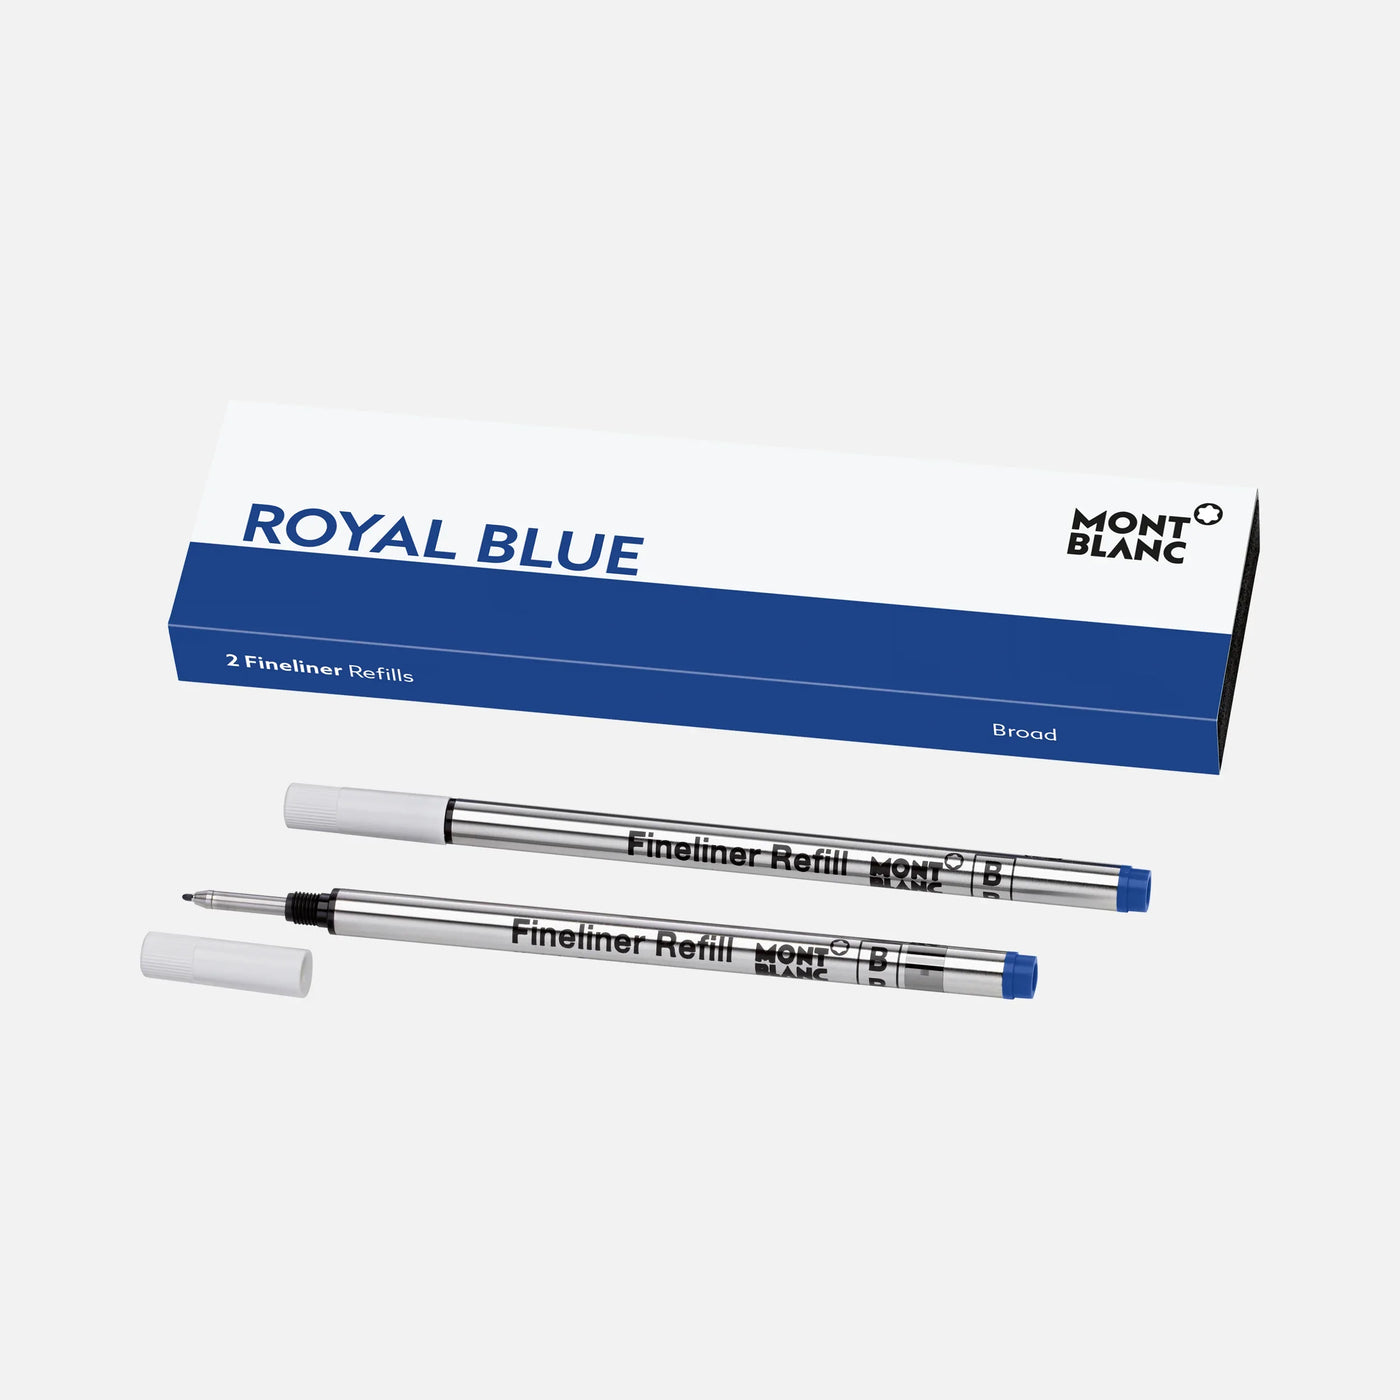 Montblanc Royal Blue 2 Fineliner Refills - Broad